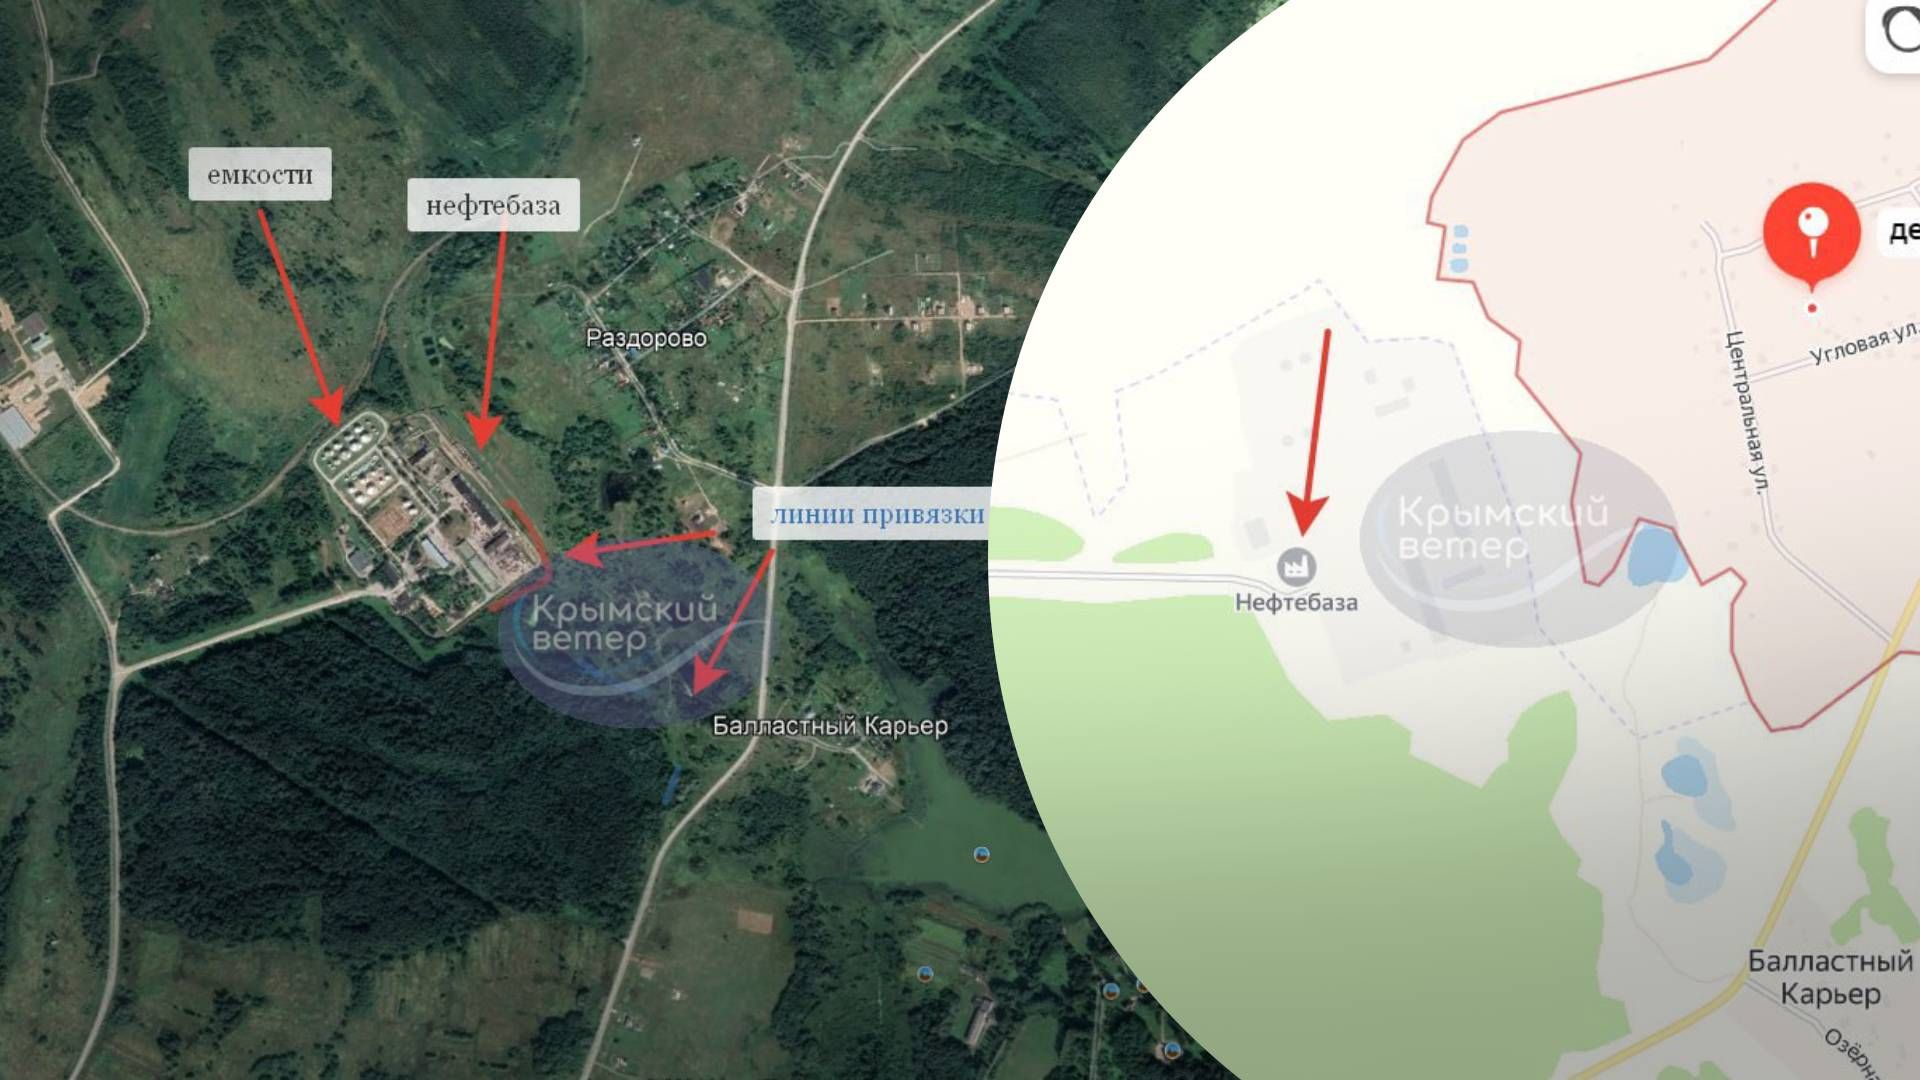 Спутник зафиксировал мощный пожар на нефтебазе в Смоленской области - 24 Канал